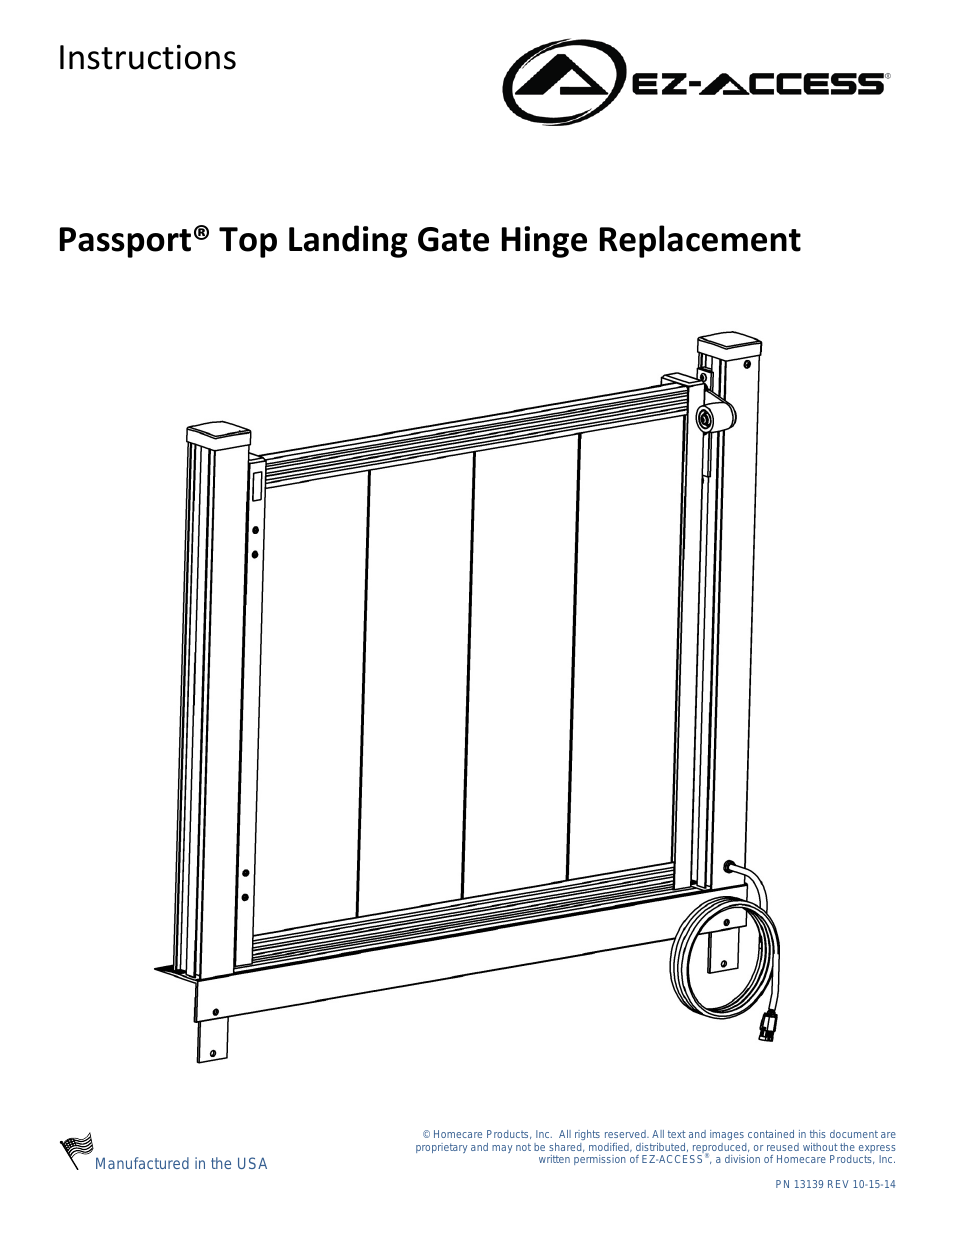 PASSPORT TOP LANDING GATE HINGE REPLACEMENT